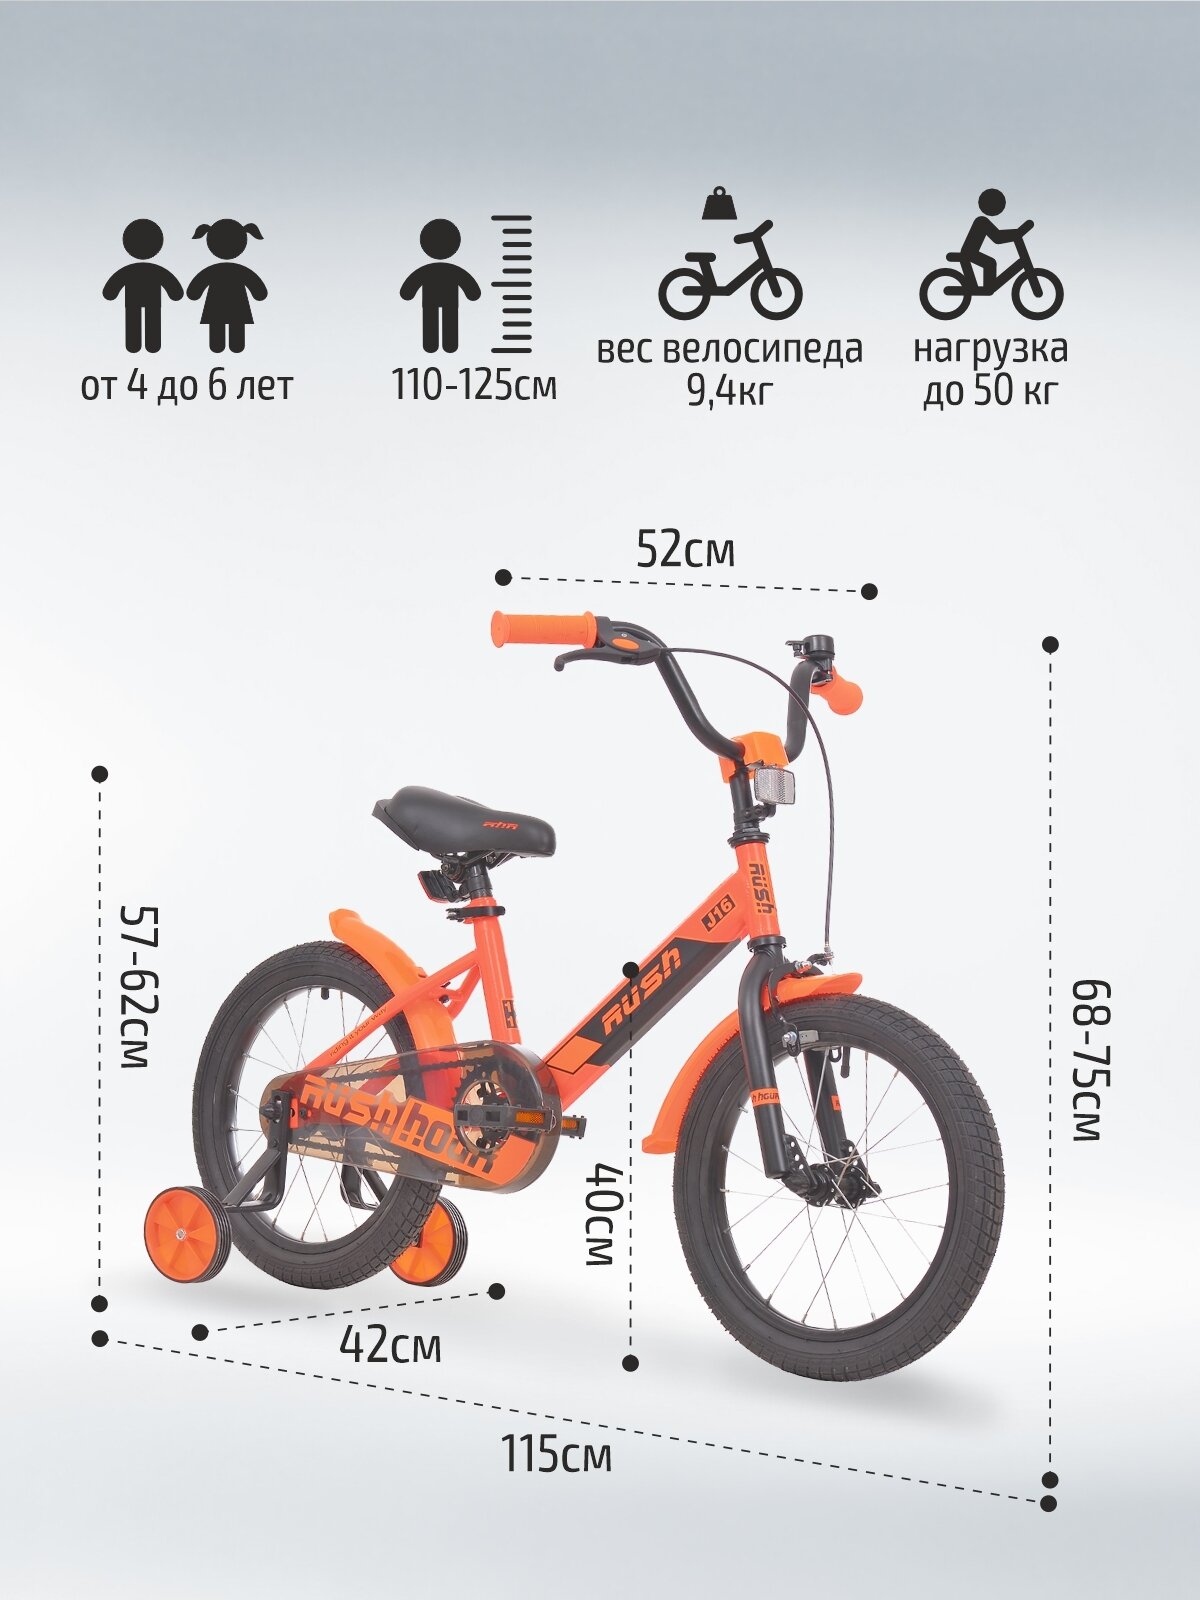 Велосипед двухколесный детский 16" дюймов RUSH HOUR J16 рост 110-125 см оранжевый. Для девочки, для мальчиков, для малышей 4 года, 5 лет, 6 лет, для дошкольников, велик детский, раш